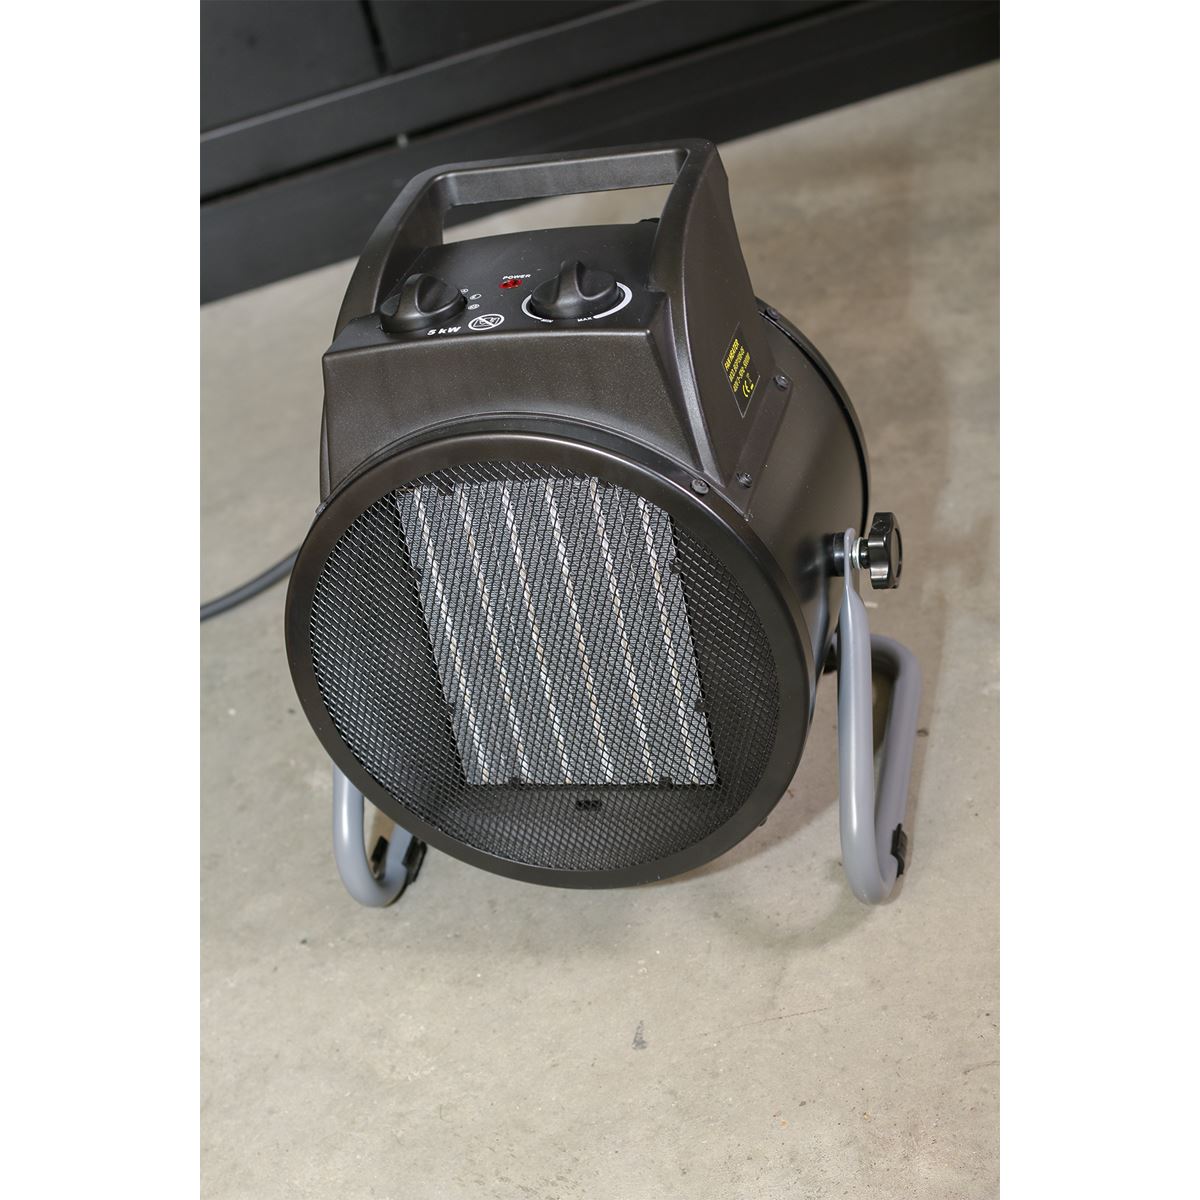 Sealey Industrial PTC Fan Heater 5000W 415V 3ph